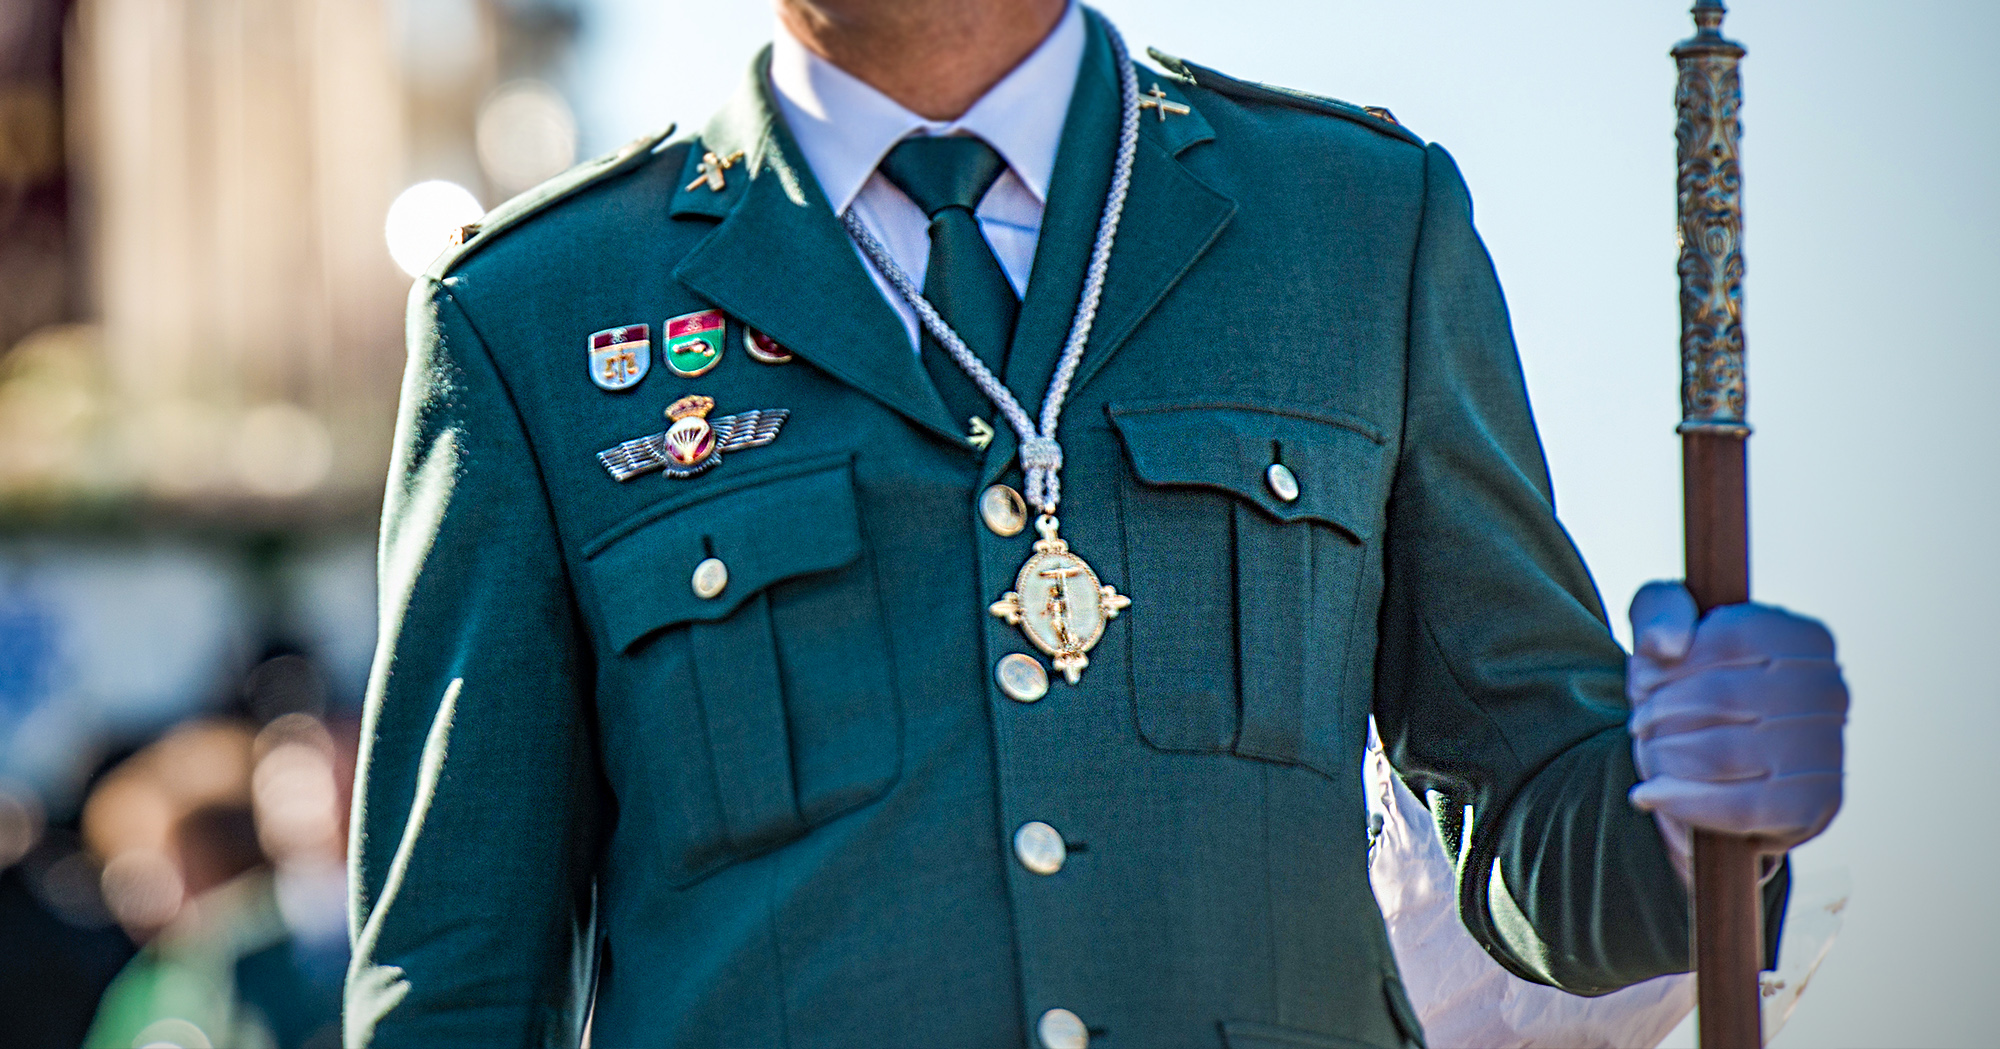 El Corte Militar: un referente en ropa militar hombre española - Corte Militar